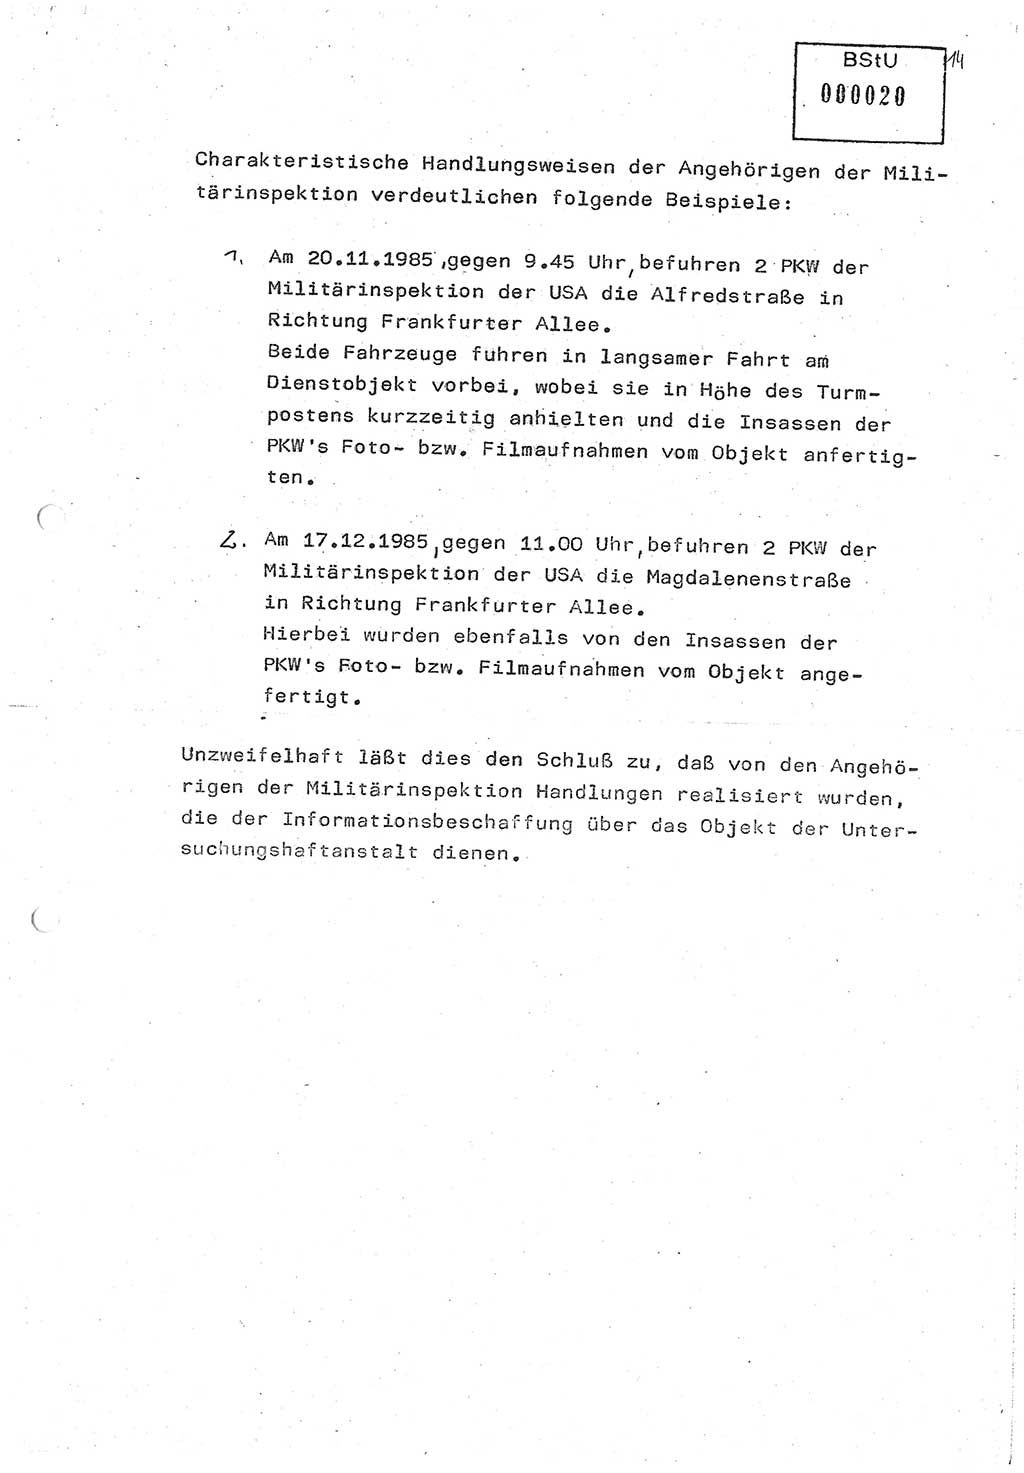 Diplomarbeit (Entwurf) Oberleutnant Peter Parke (Abt. ⅩⅣ), Ministerium für Staatssicherheit (MfS) [Deutsche Demokratische Republik (DDR)], Juristische Hochschule (JHS), Geheime Verschlußsache (GVS) o001-98/86, Potsdam 1986, Seite 20 (Dipl.-Arb. MfS DDR JHS GVS o001-98/86 1986, S. 20)